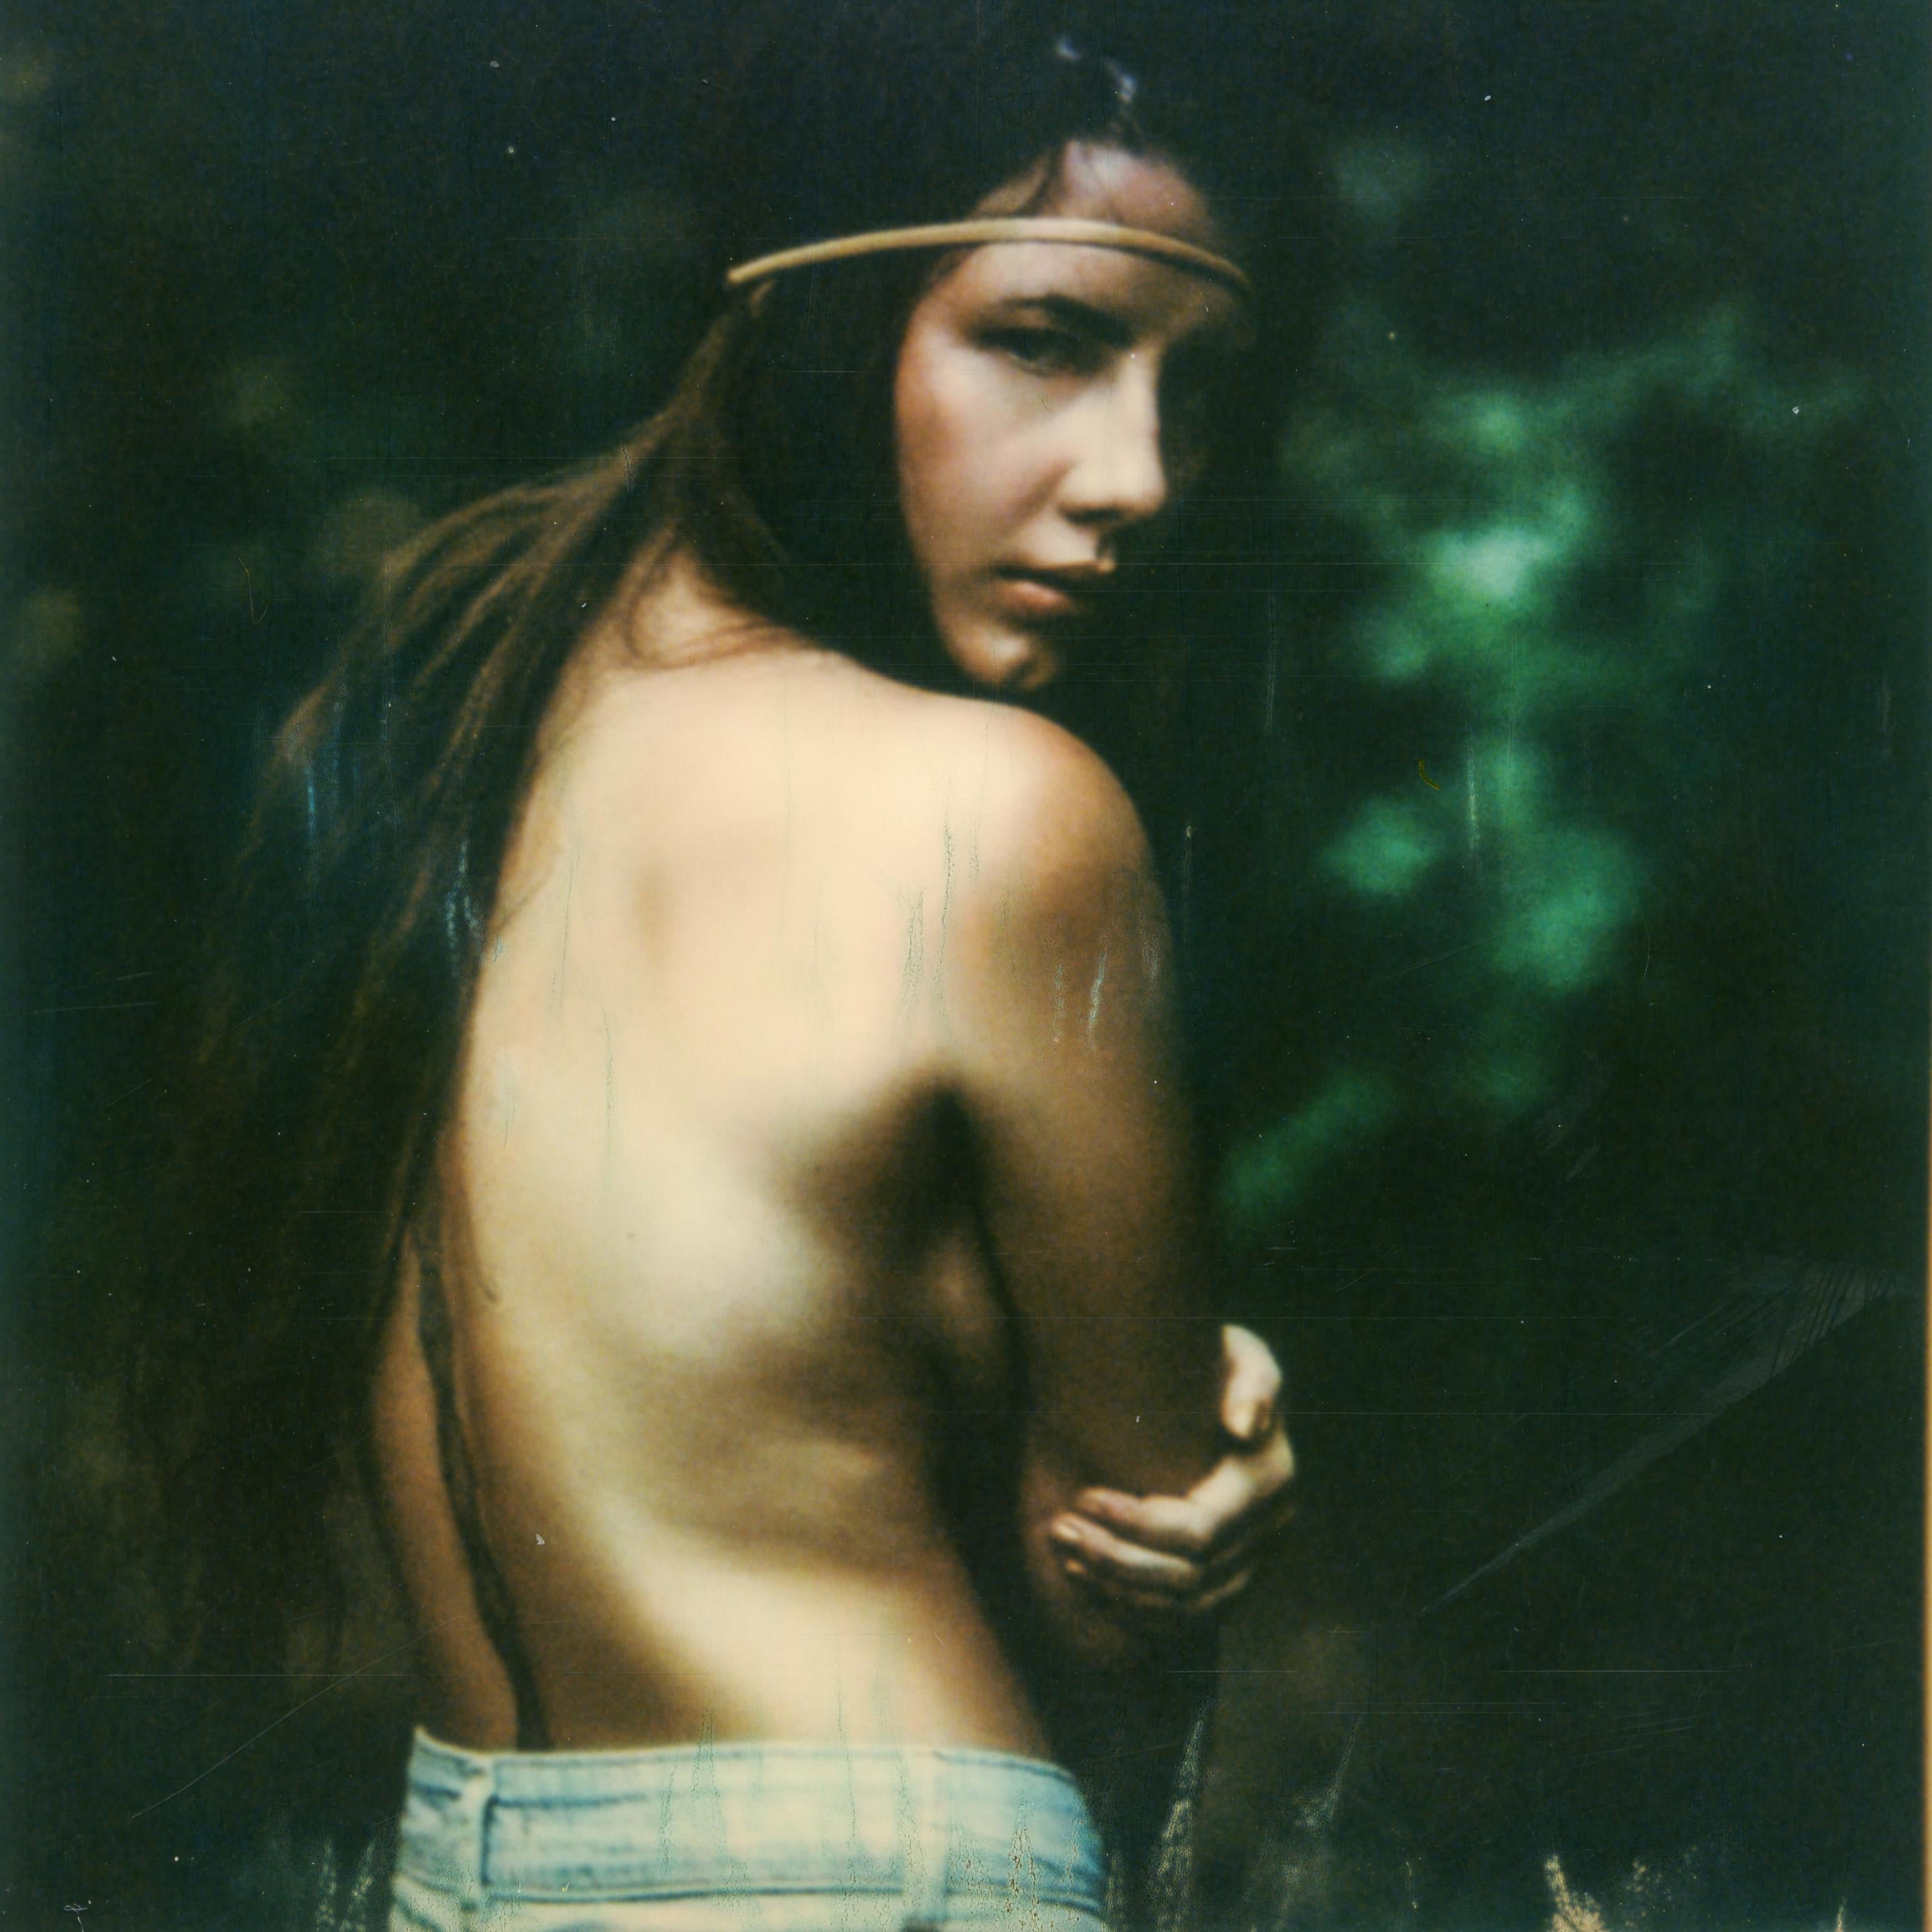 Wild Thing - Contemporary, Porträt, Frauen, Polaroid – Photograph von Kirsten Thys van den Audenaerde